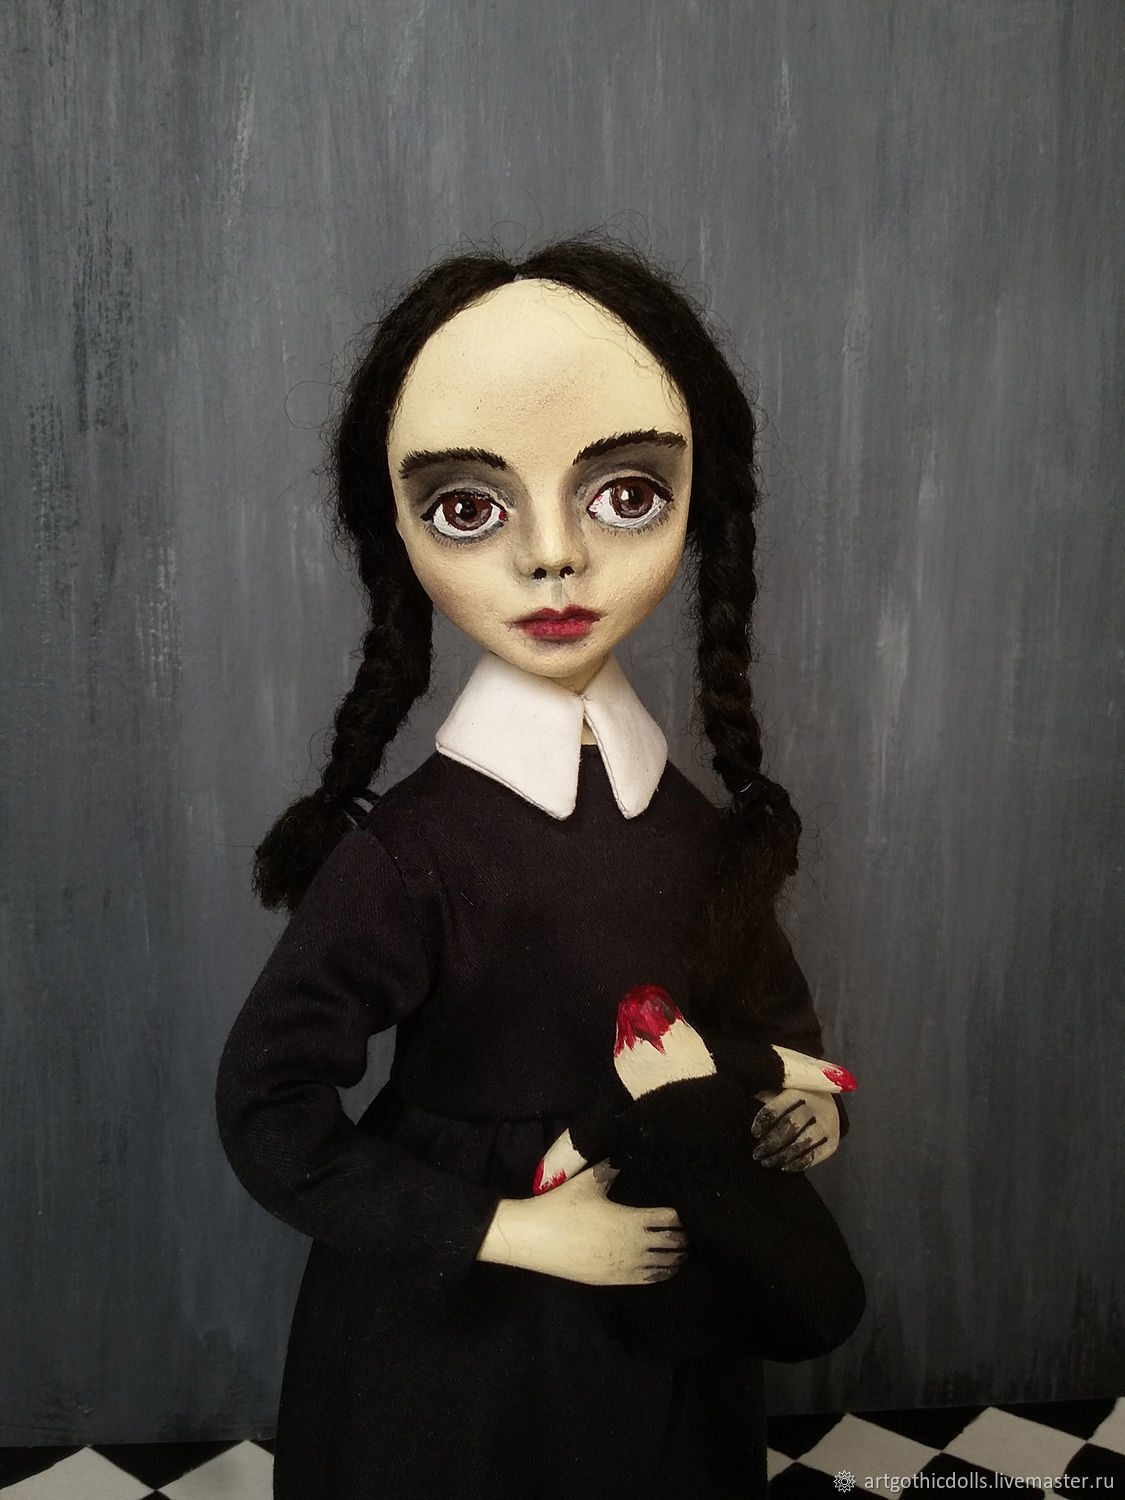 Игрушки и куклы ручной работы: ручной работы - купить в Одессе на natali-fashion.ru